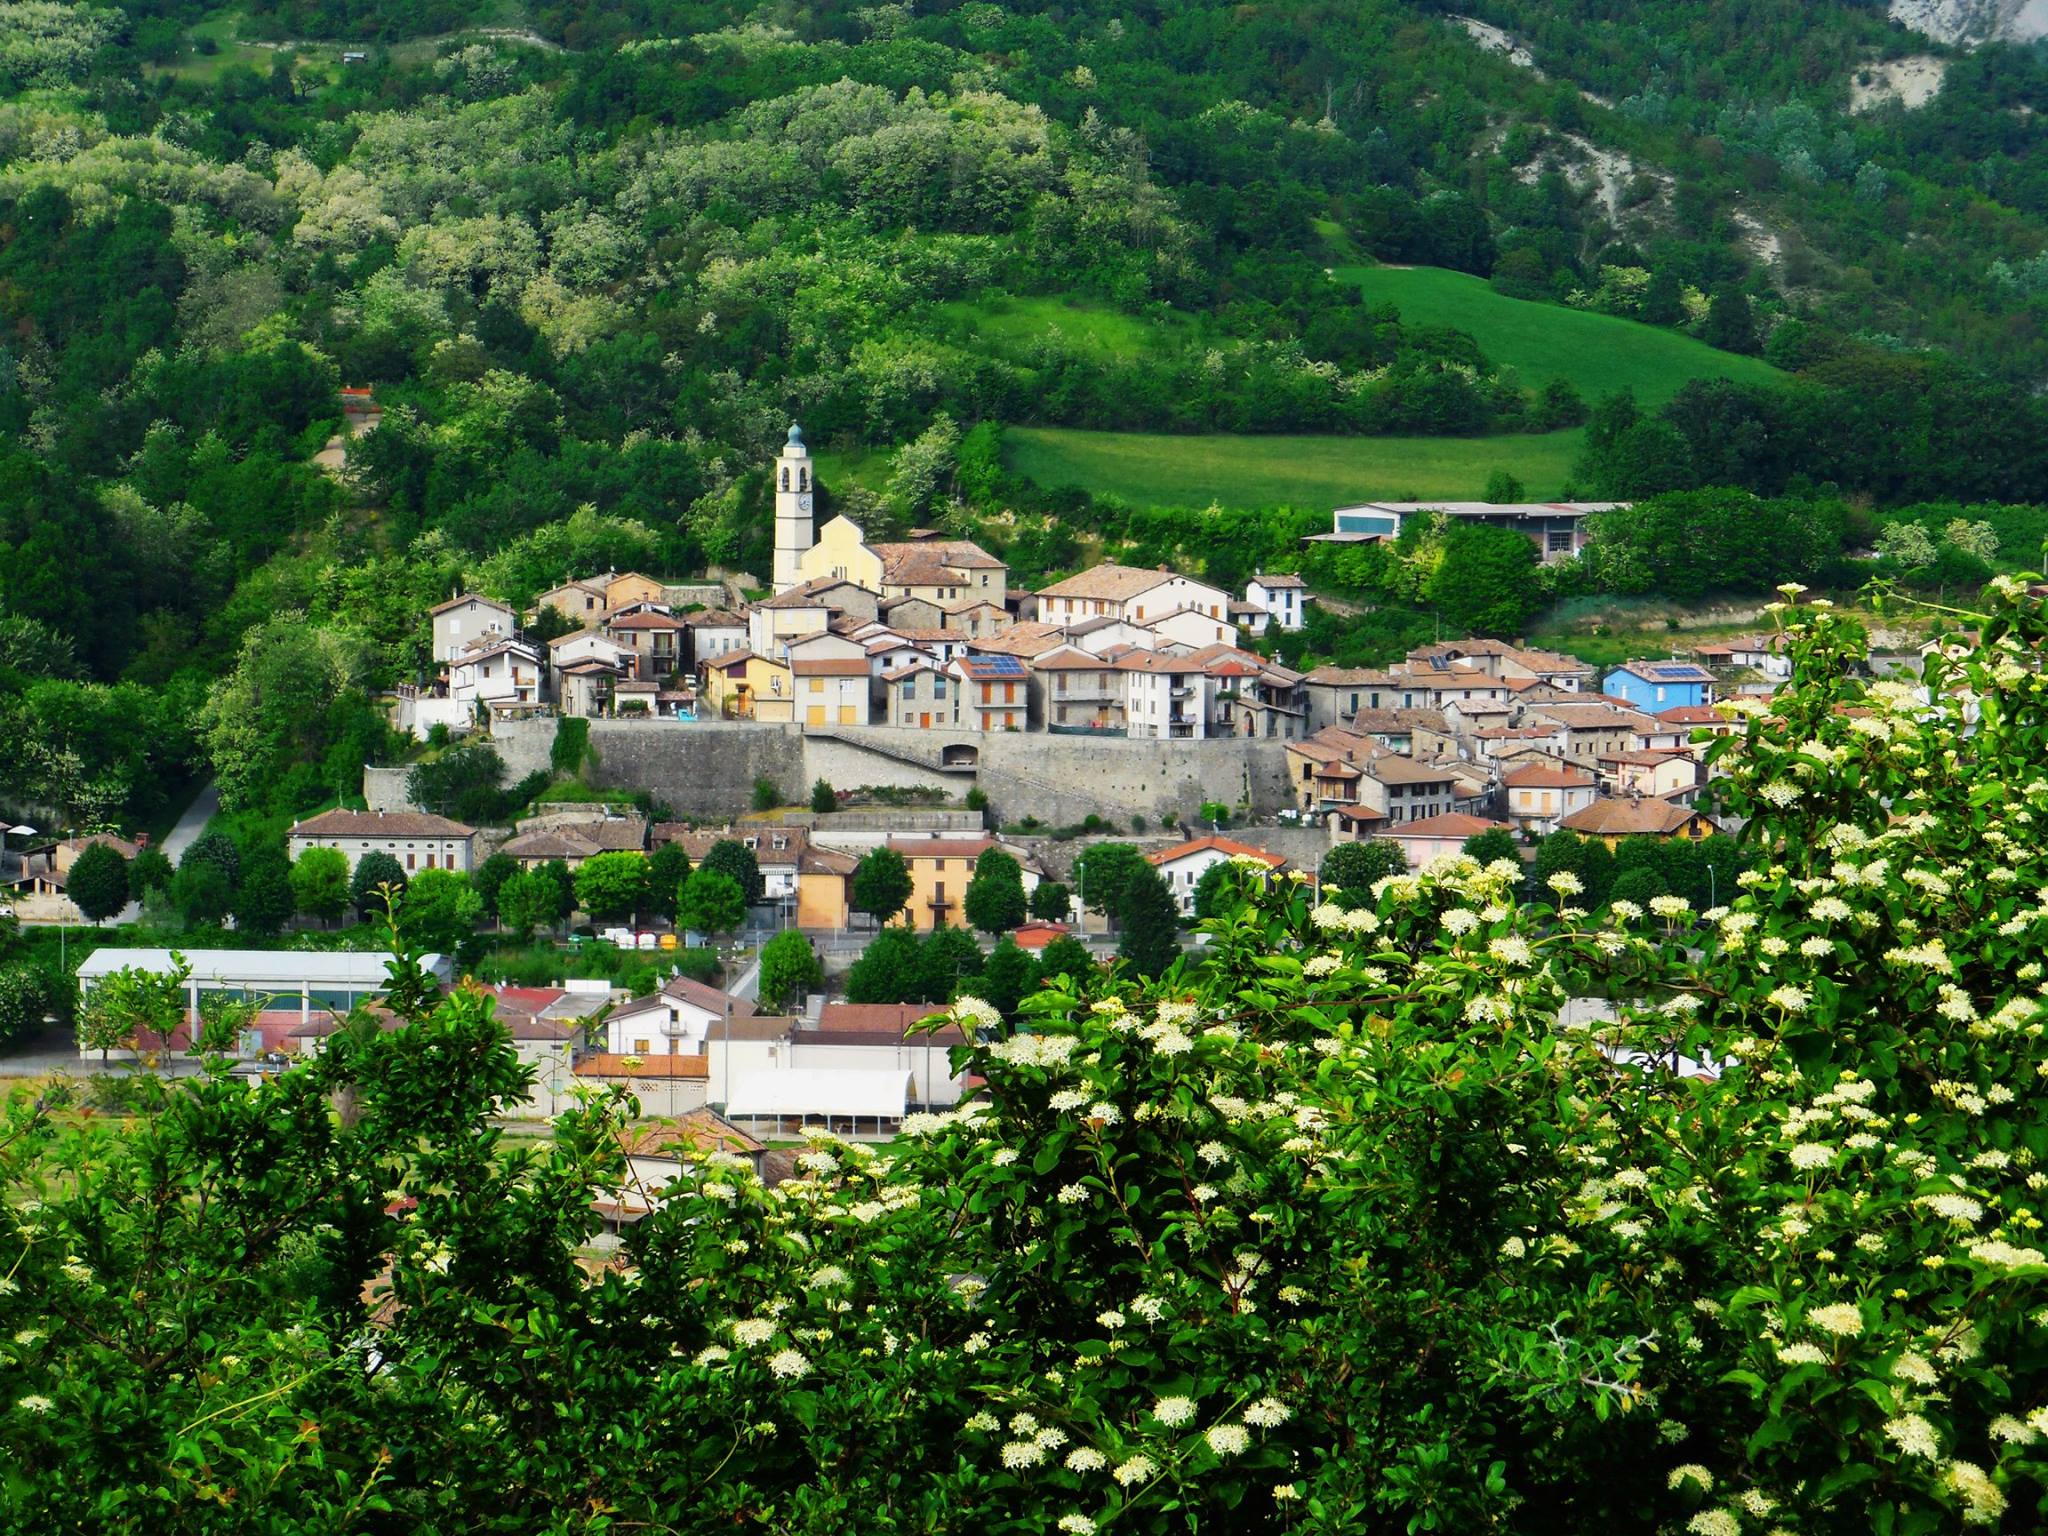 Municipality of Bagnaria